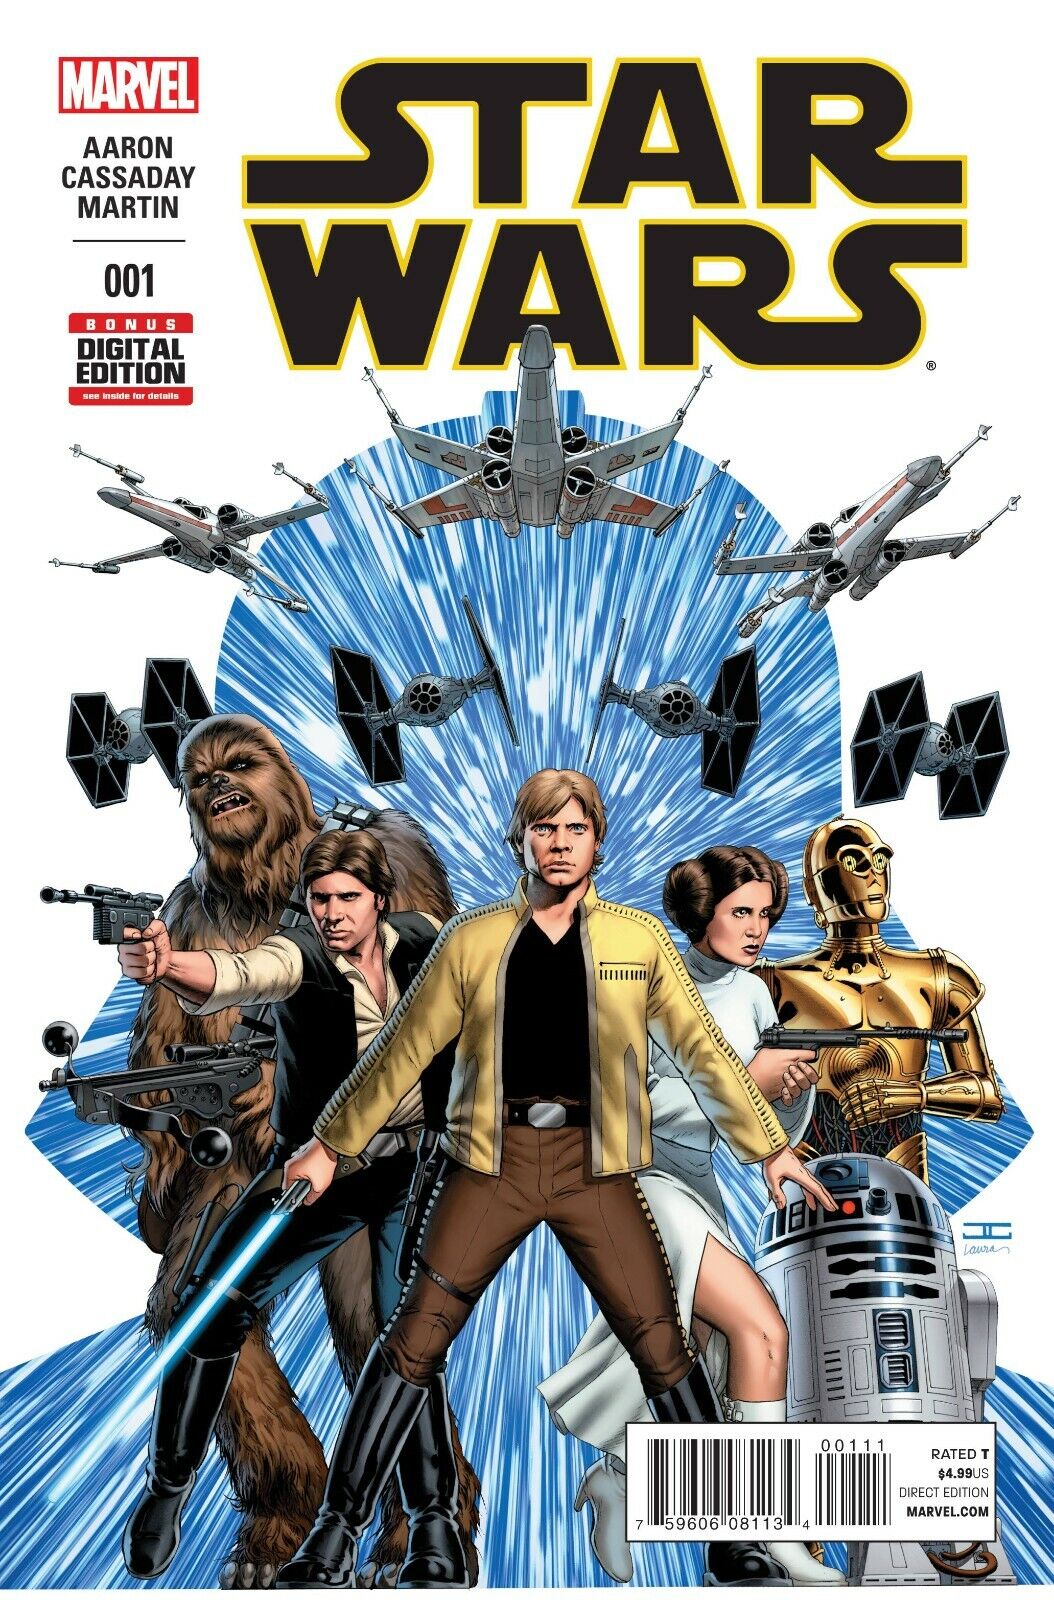 Marvel Star Wars Vol. 2 #1-75 + Annuals  |  U PICK Comic Lot NM 1st Print